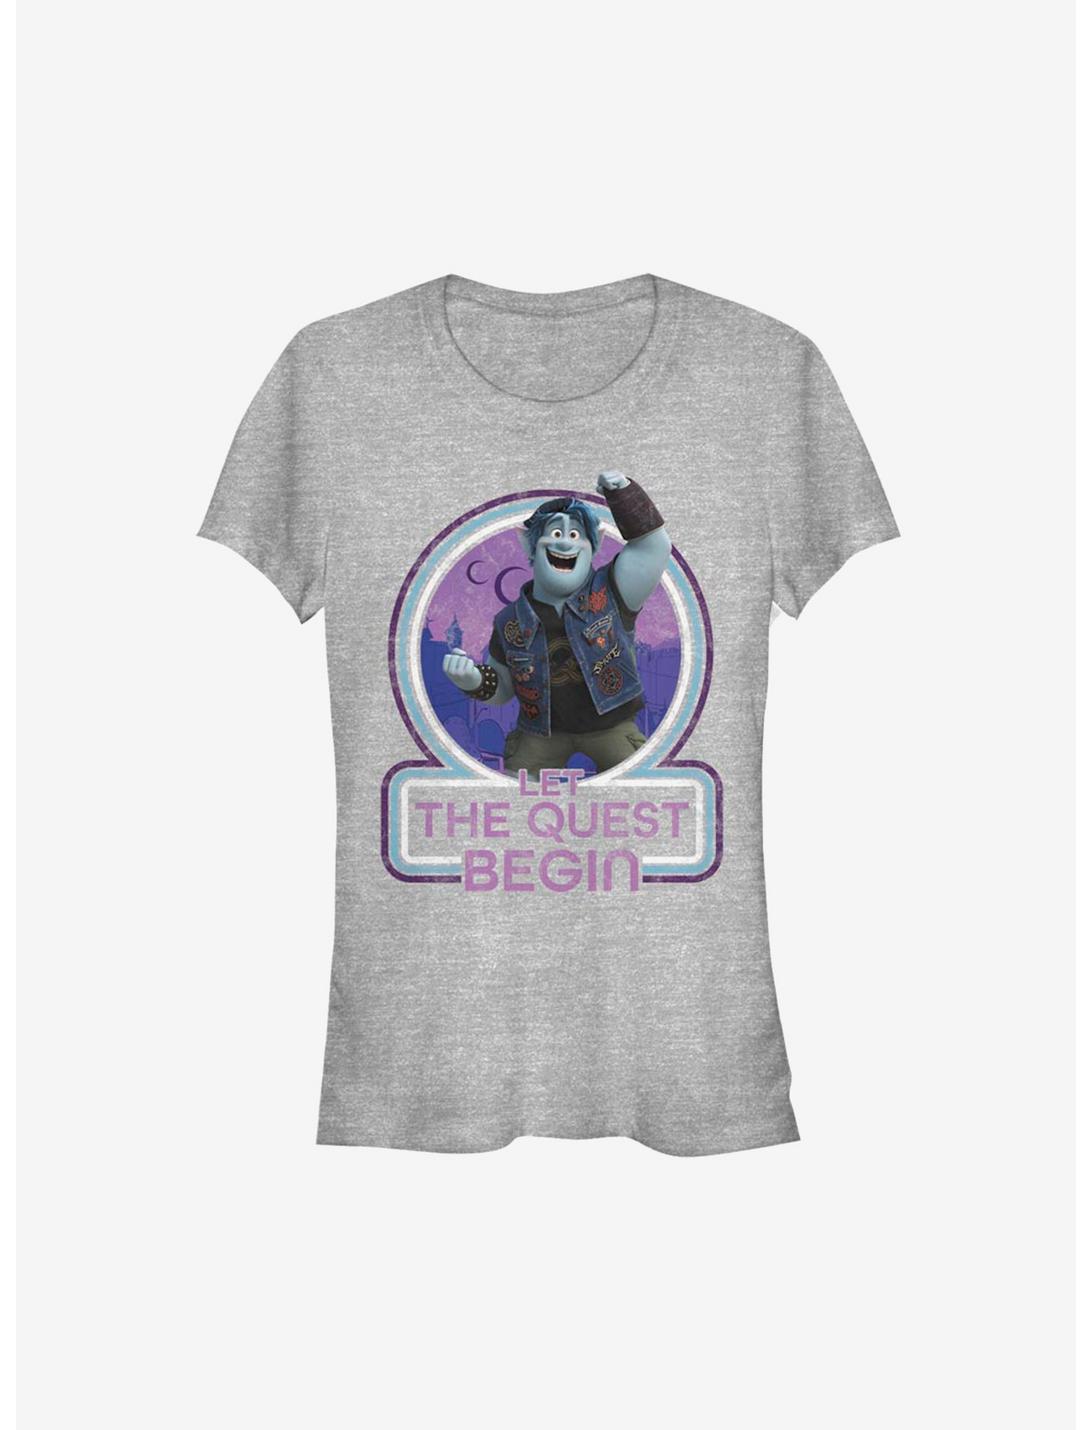 Disney Pixar Onward Begin Quest Girls T-Shirt, ATH HTR, hi-res